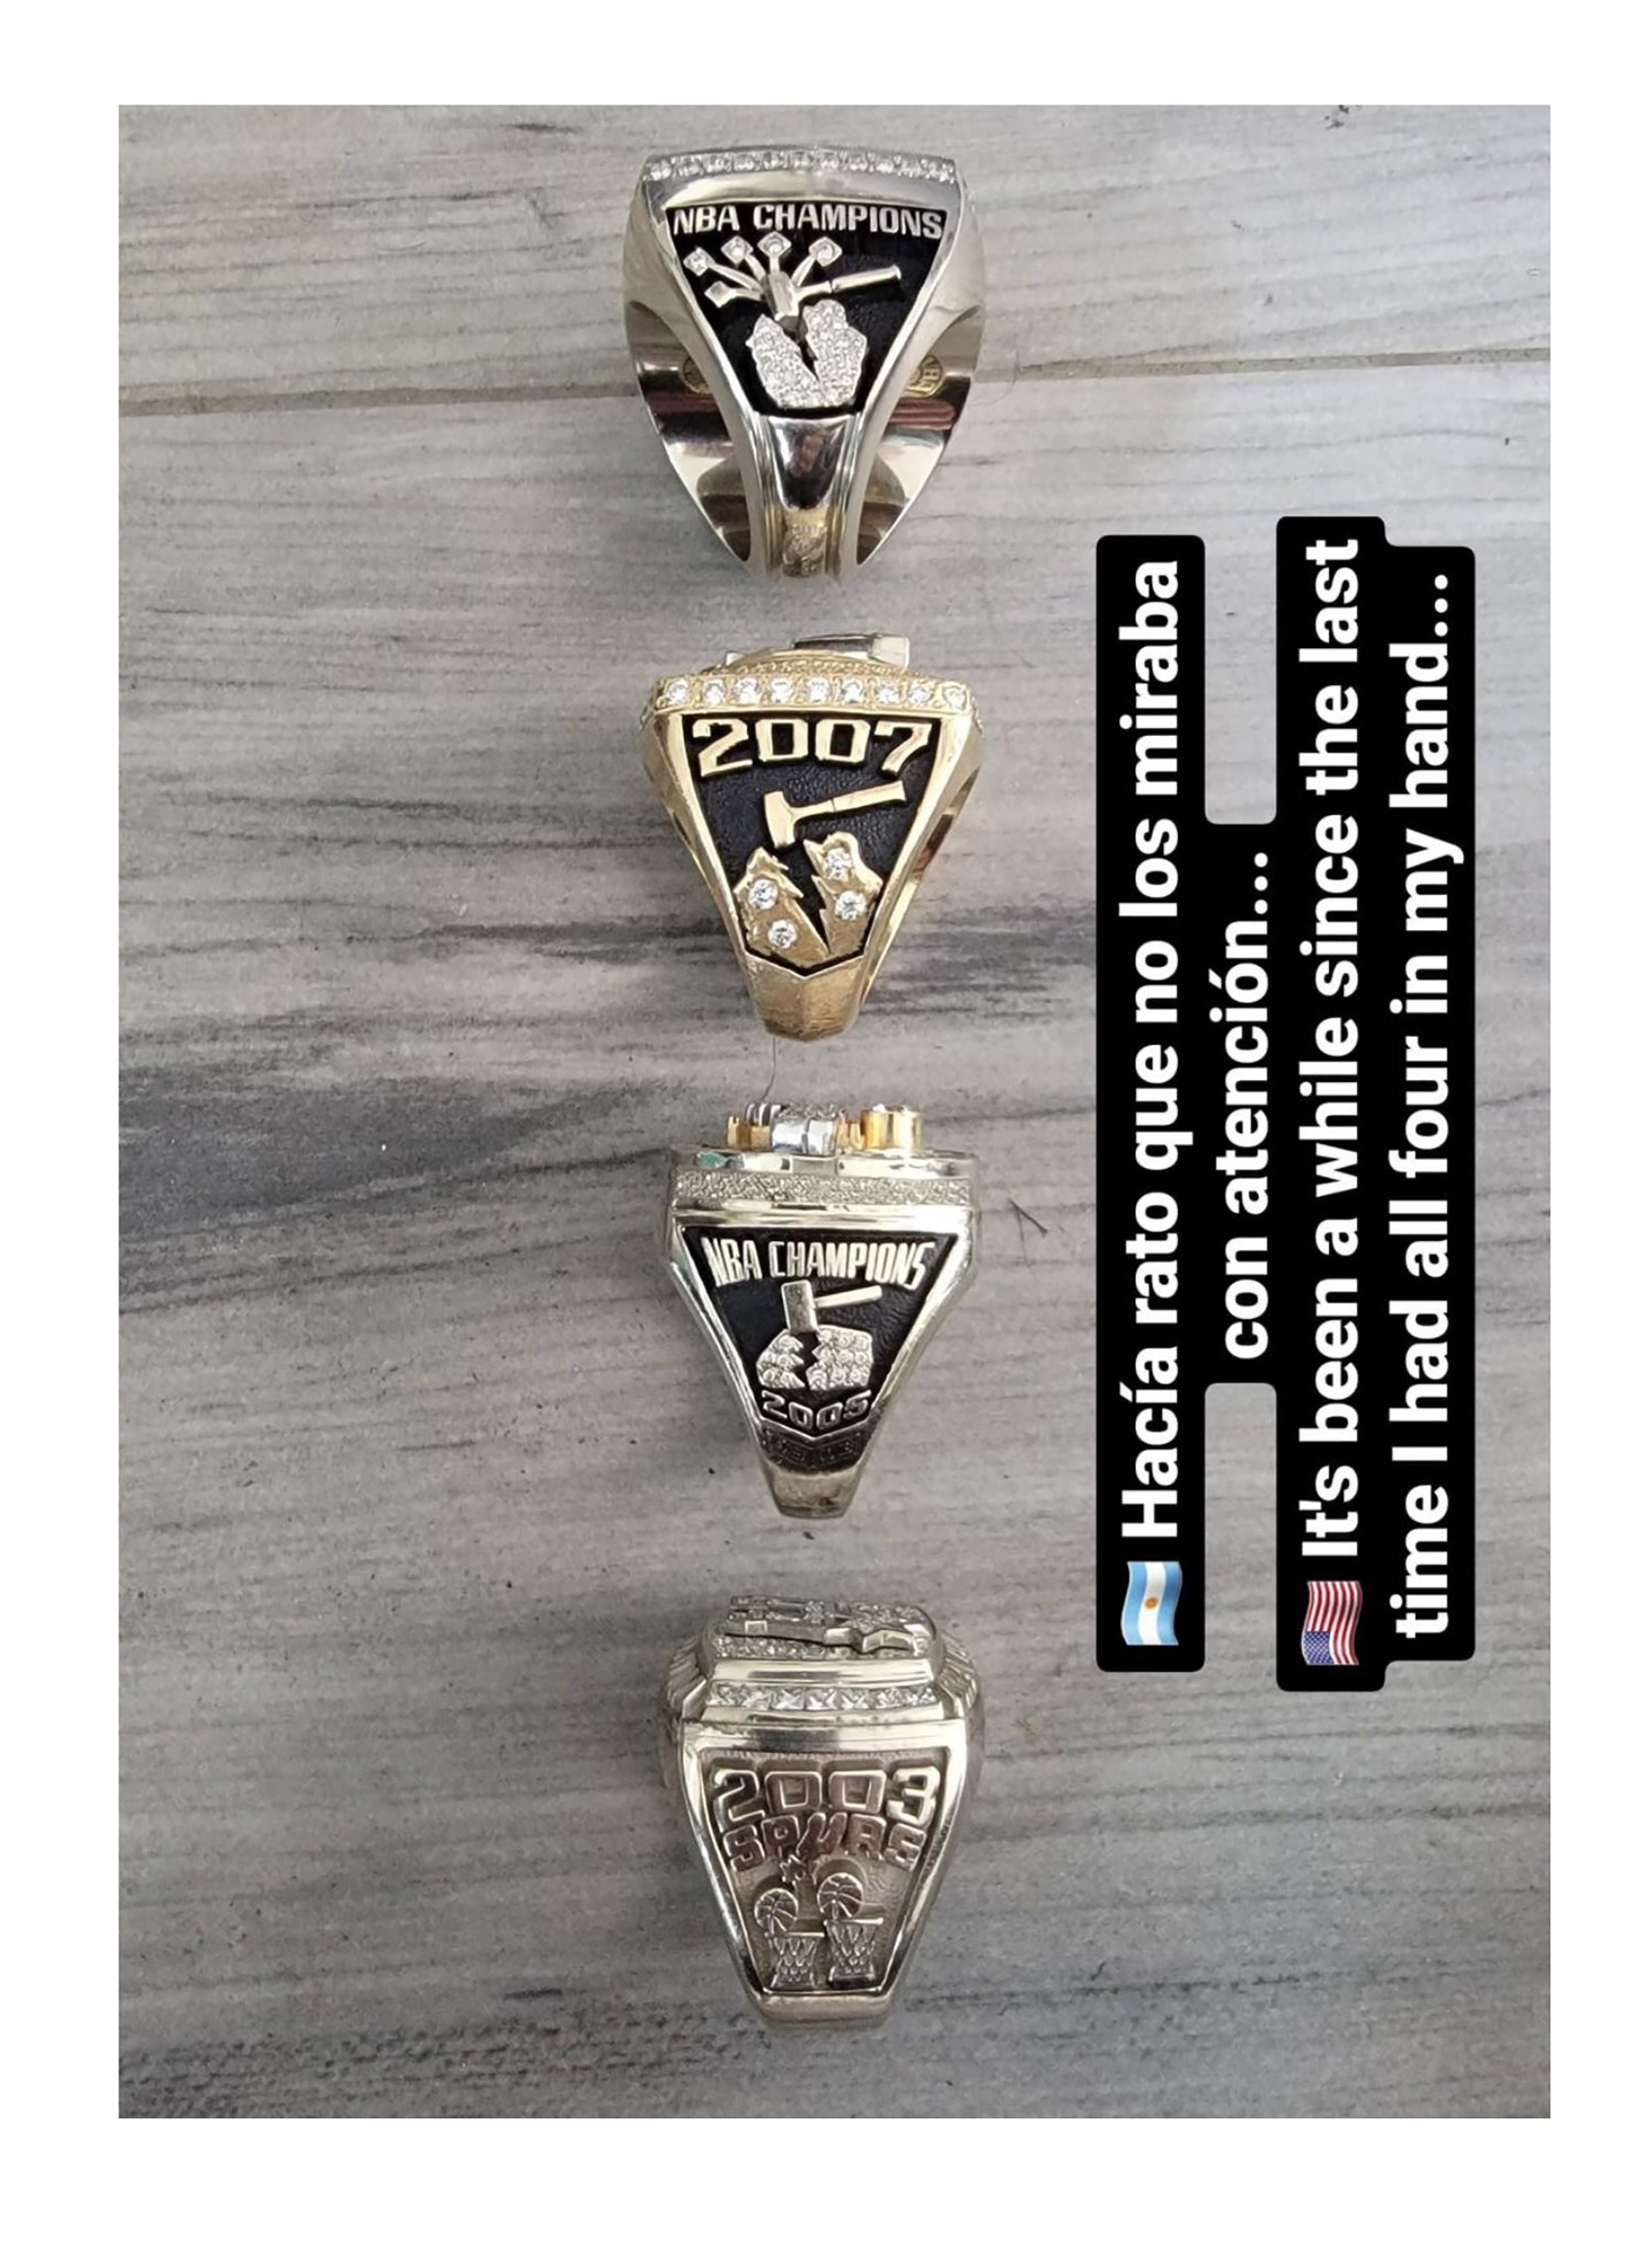 ¿Cuántos anillos tiene San Antonio Spurs